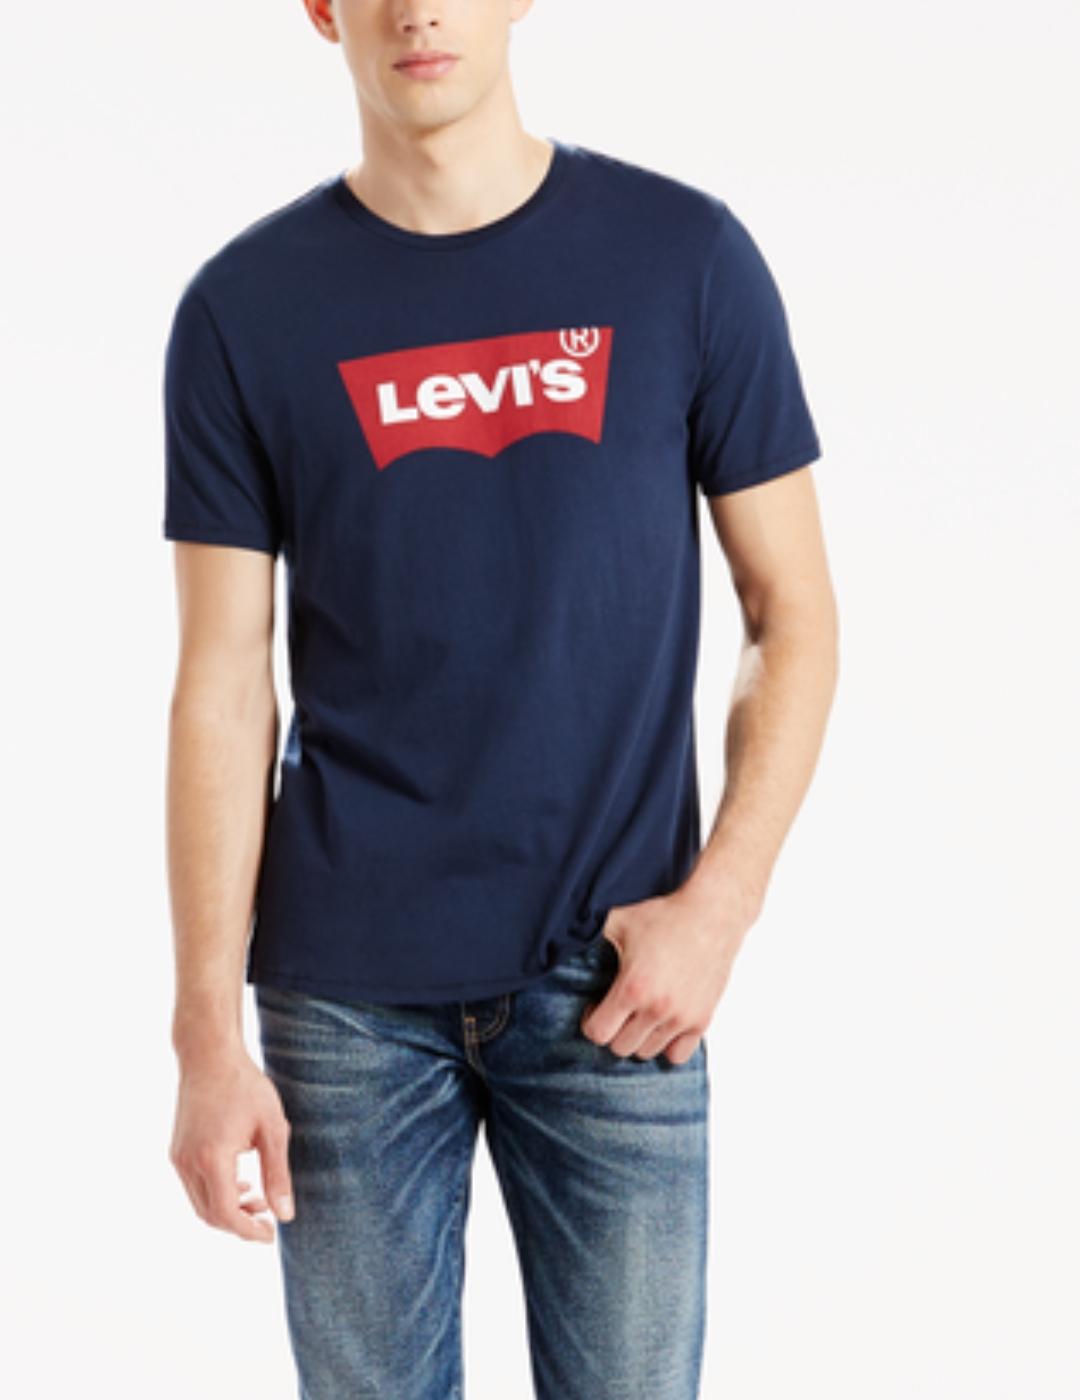 Camiseta levis logo marino corta hombre-ñ22